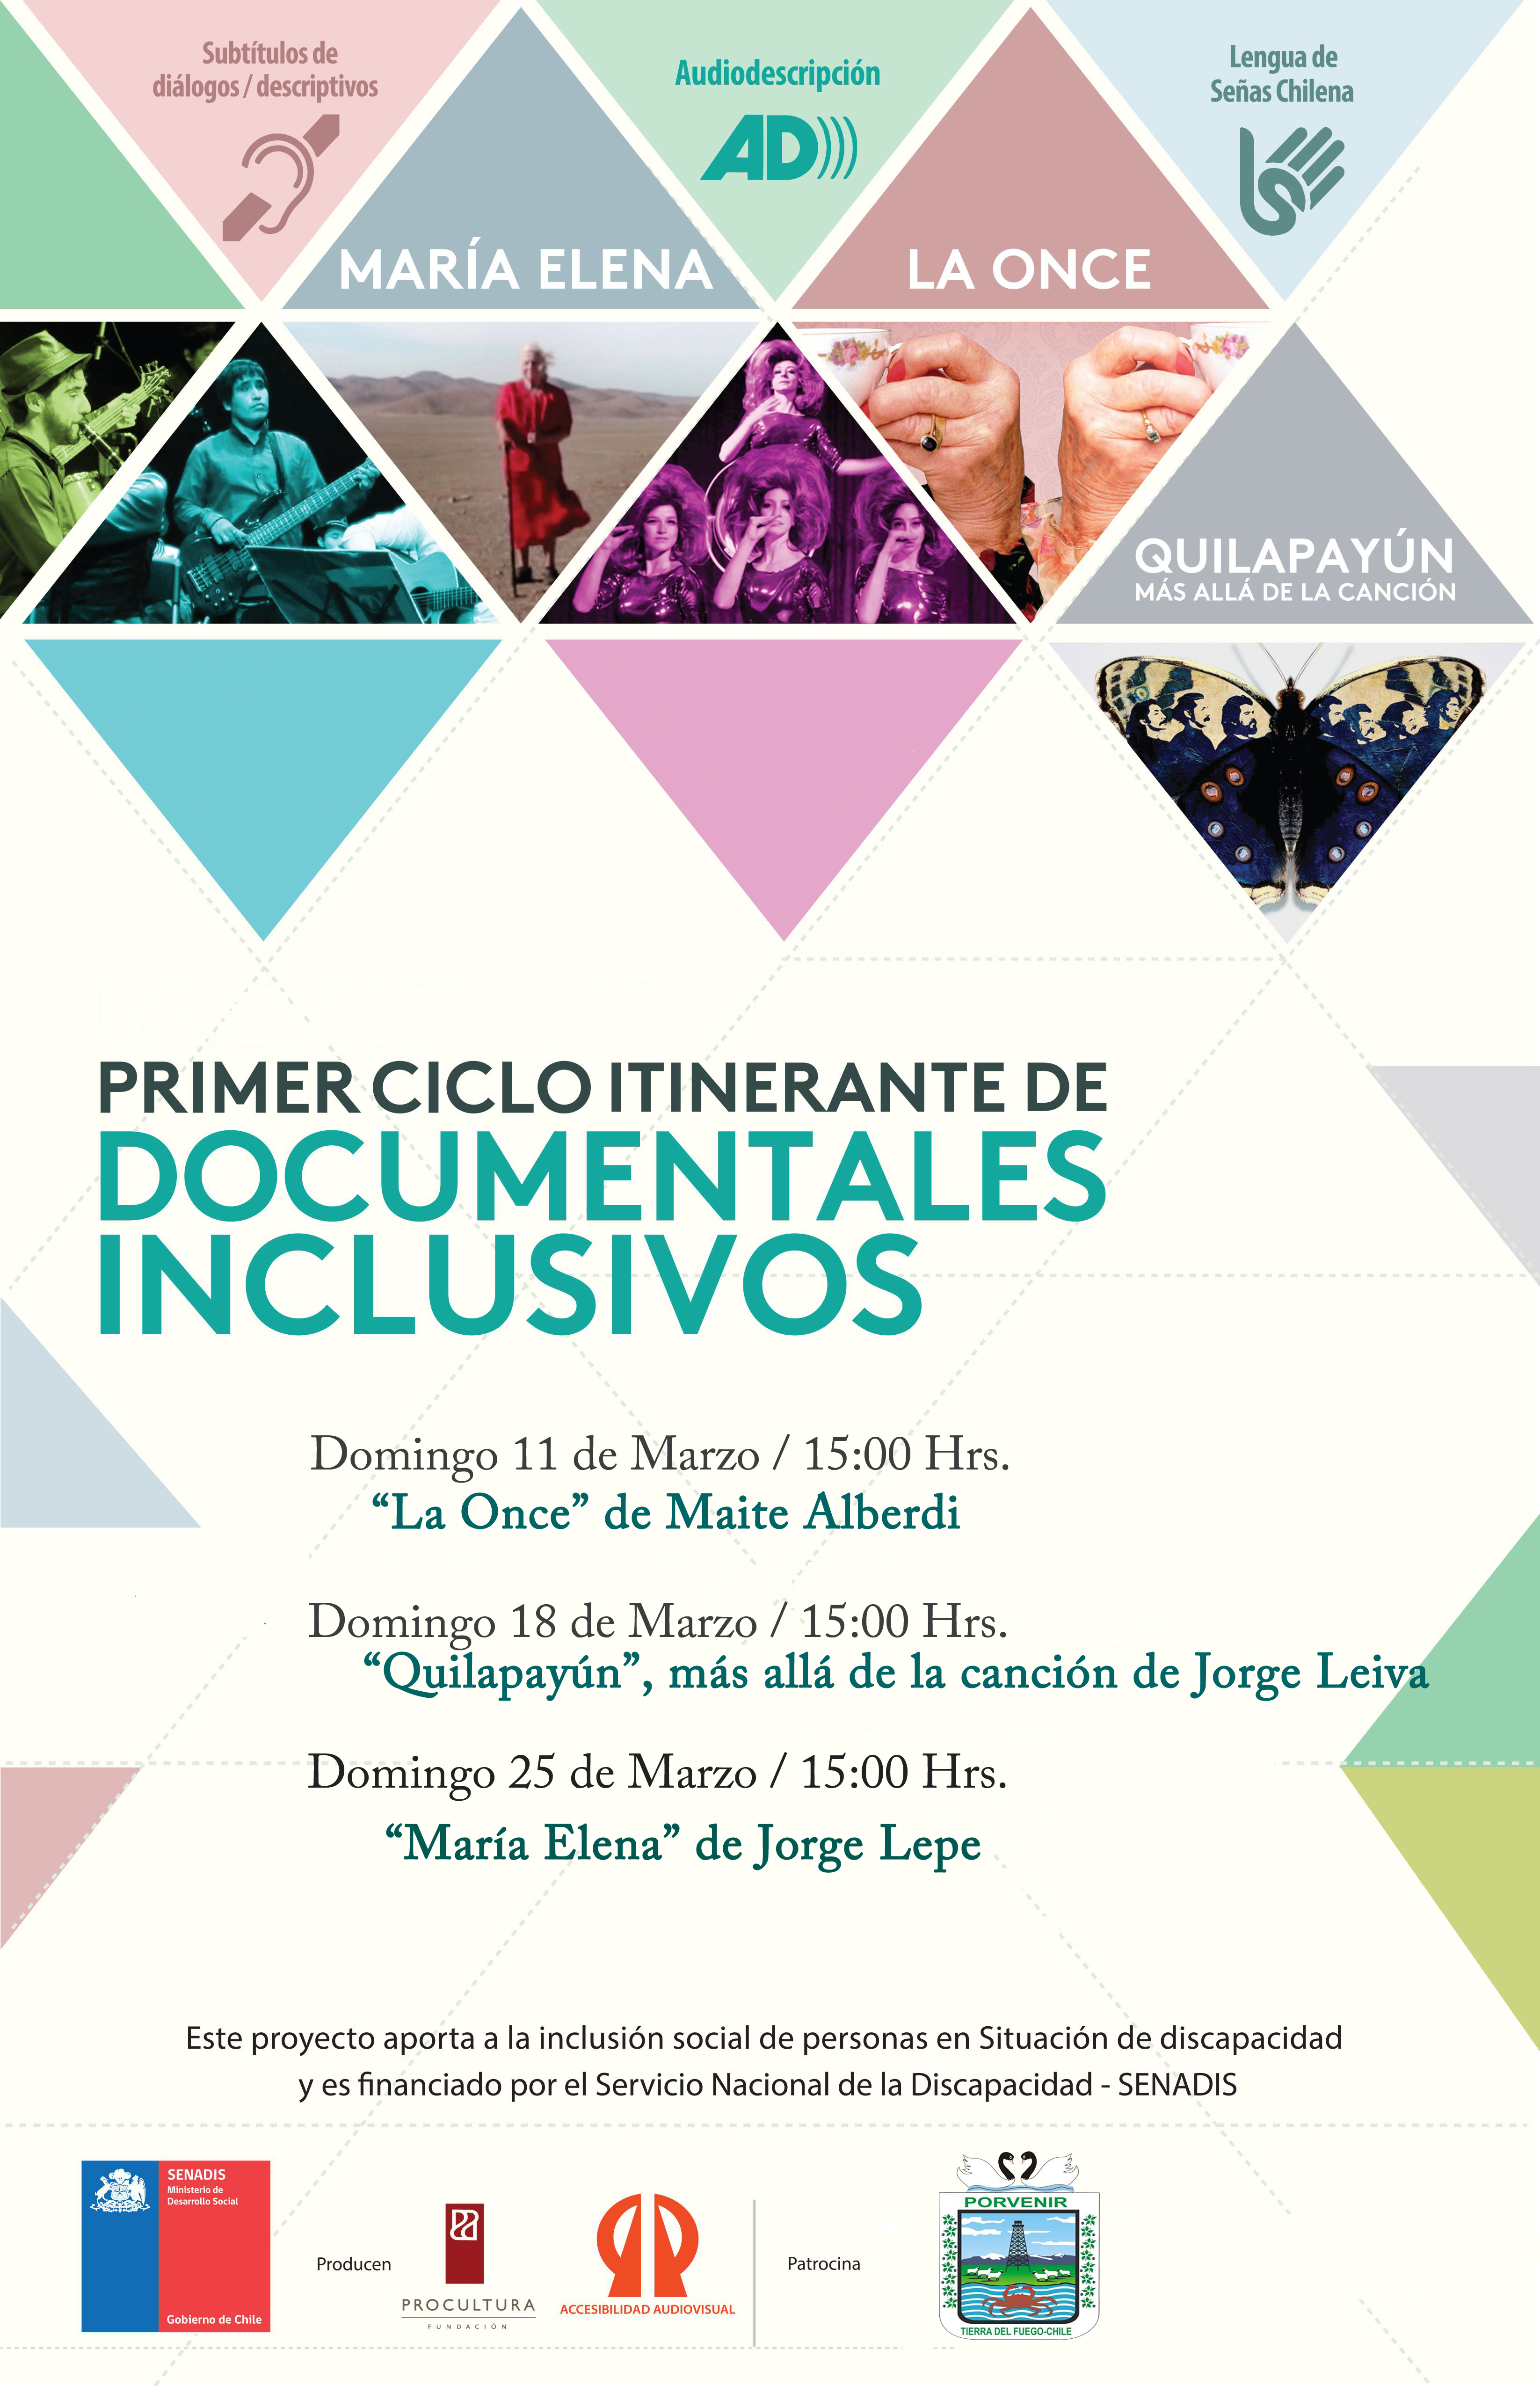 Ciclo itinerante de documentales chilenos se realiza por primera vez en Porvenir